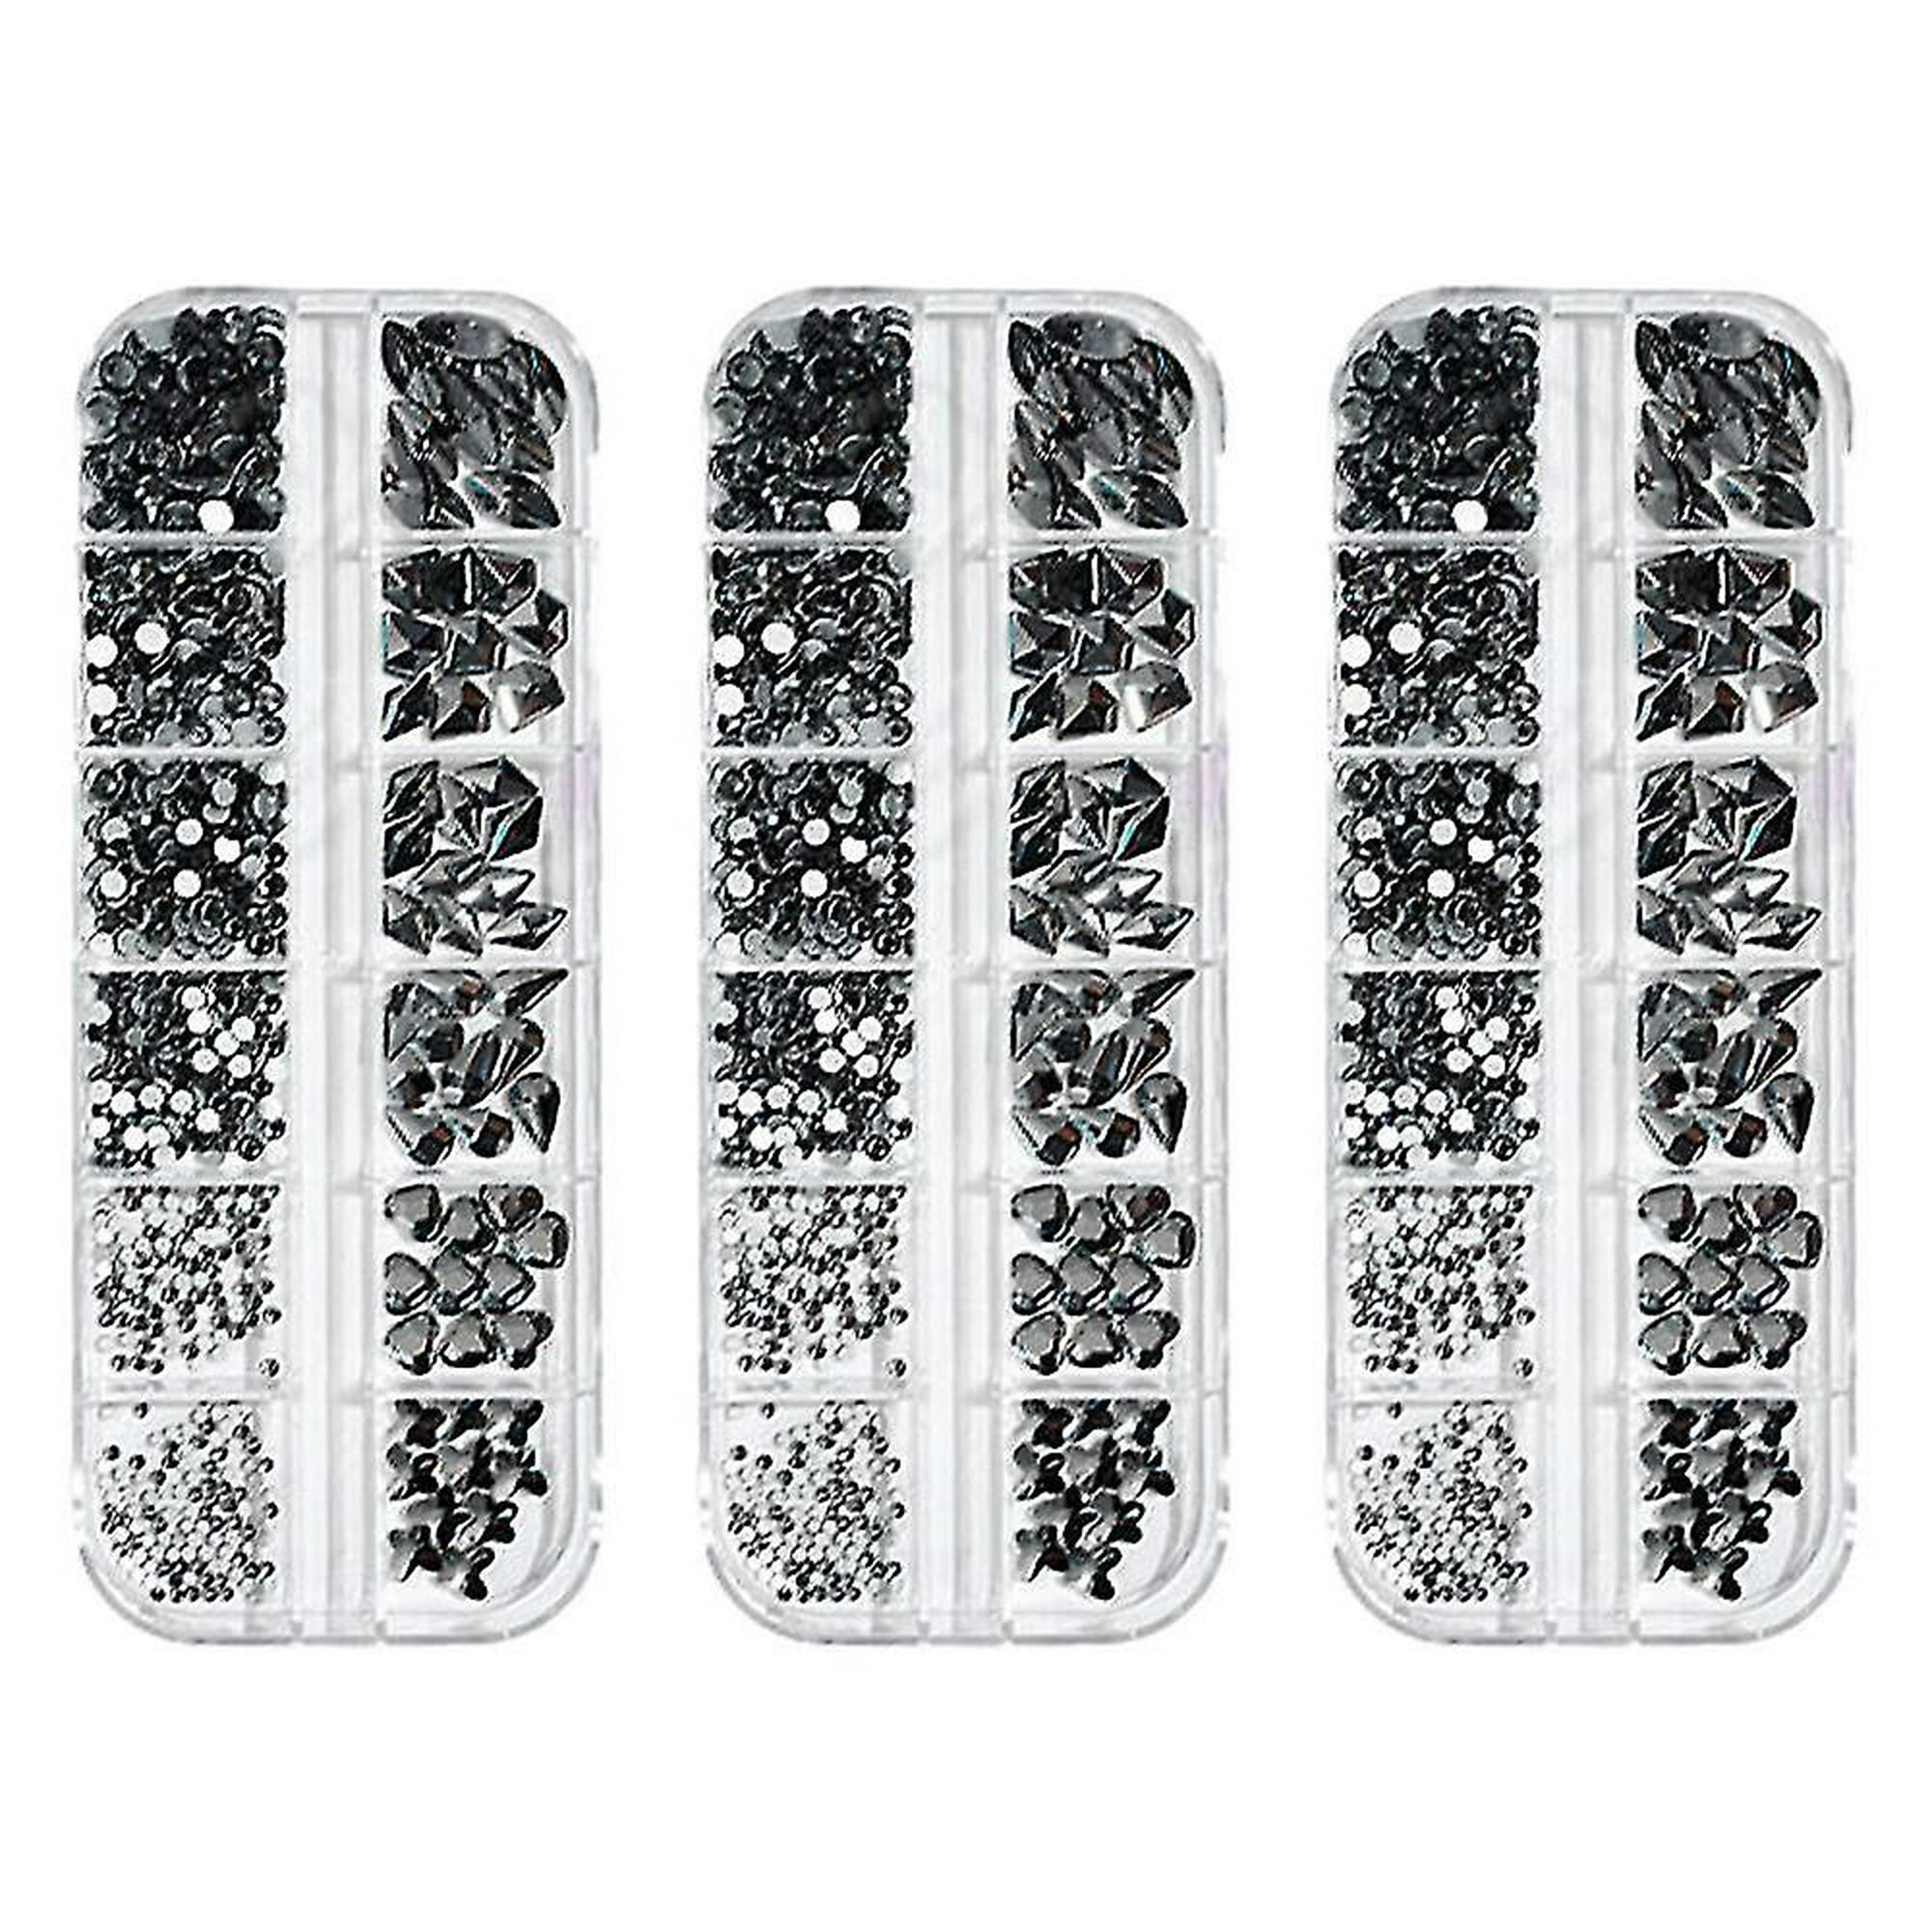 Diseño Con Piedras Para Uñas  Diseños De Piedras Para Uñas - 1 Box  Mulit-designs - Aliexpress